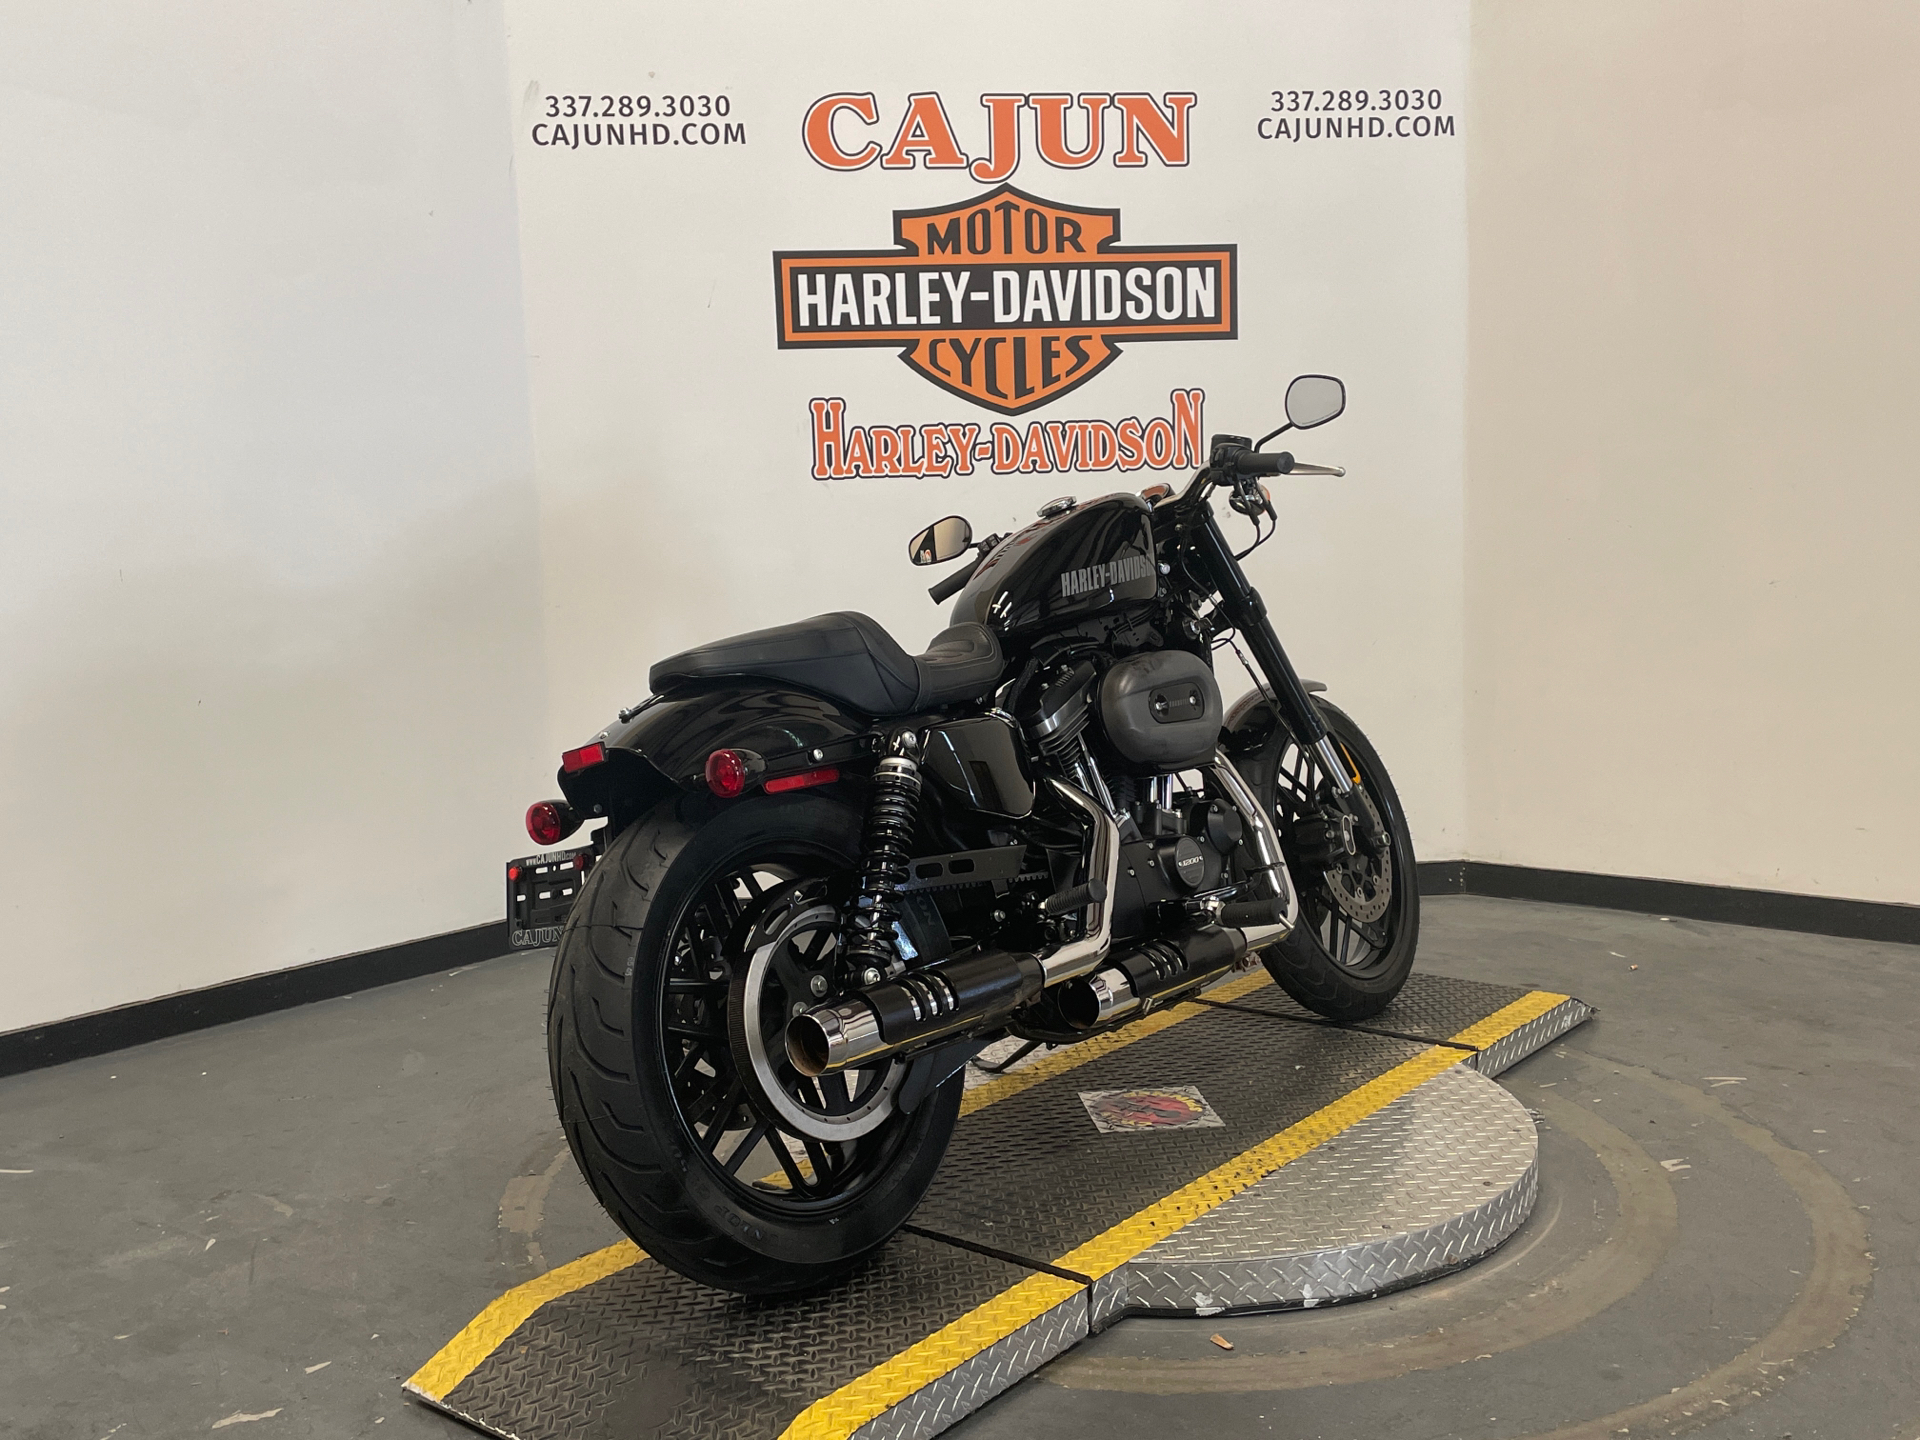 2016 Harley-Davidson Roadster for sale - Photo 6